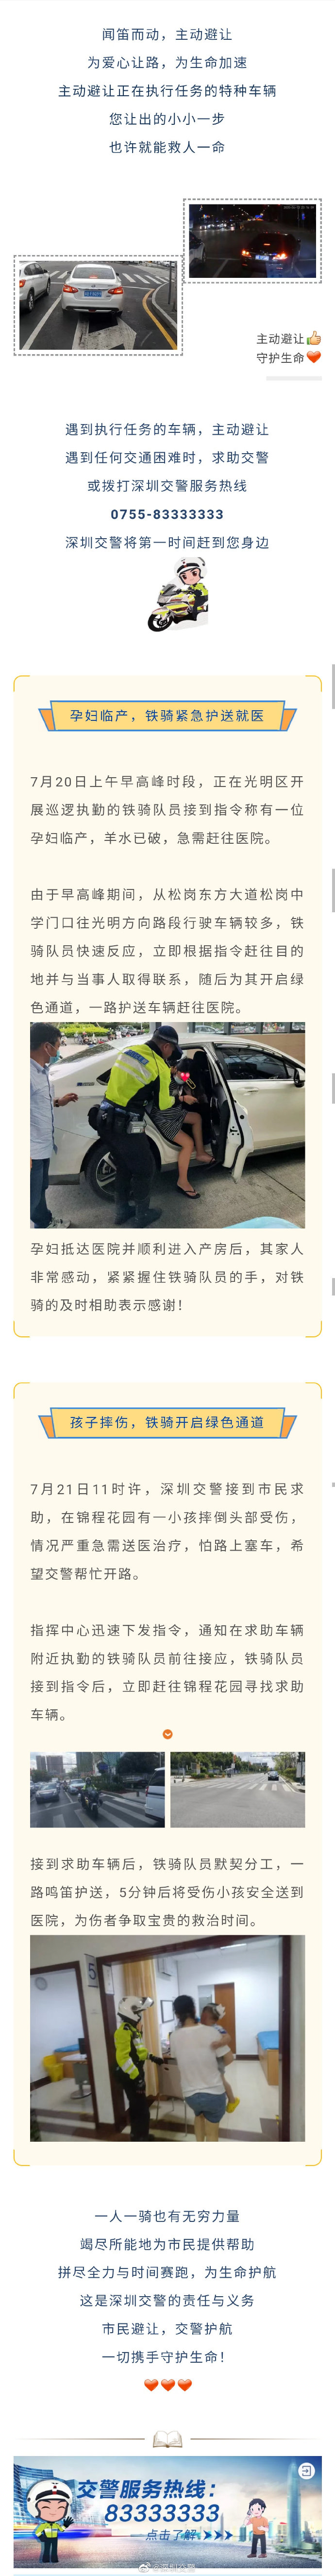 深圳交警提醒 这种情况违章不罚款不扣分